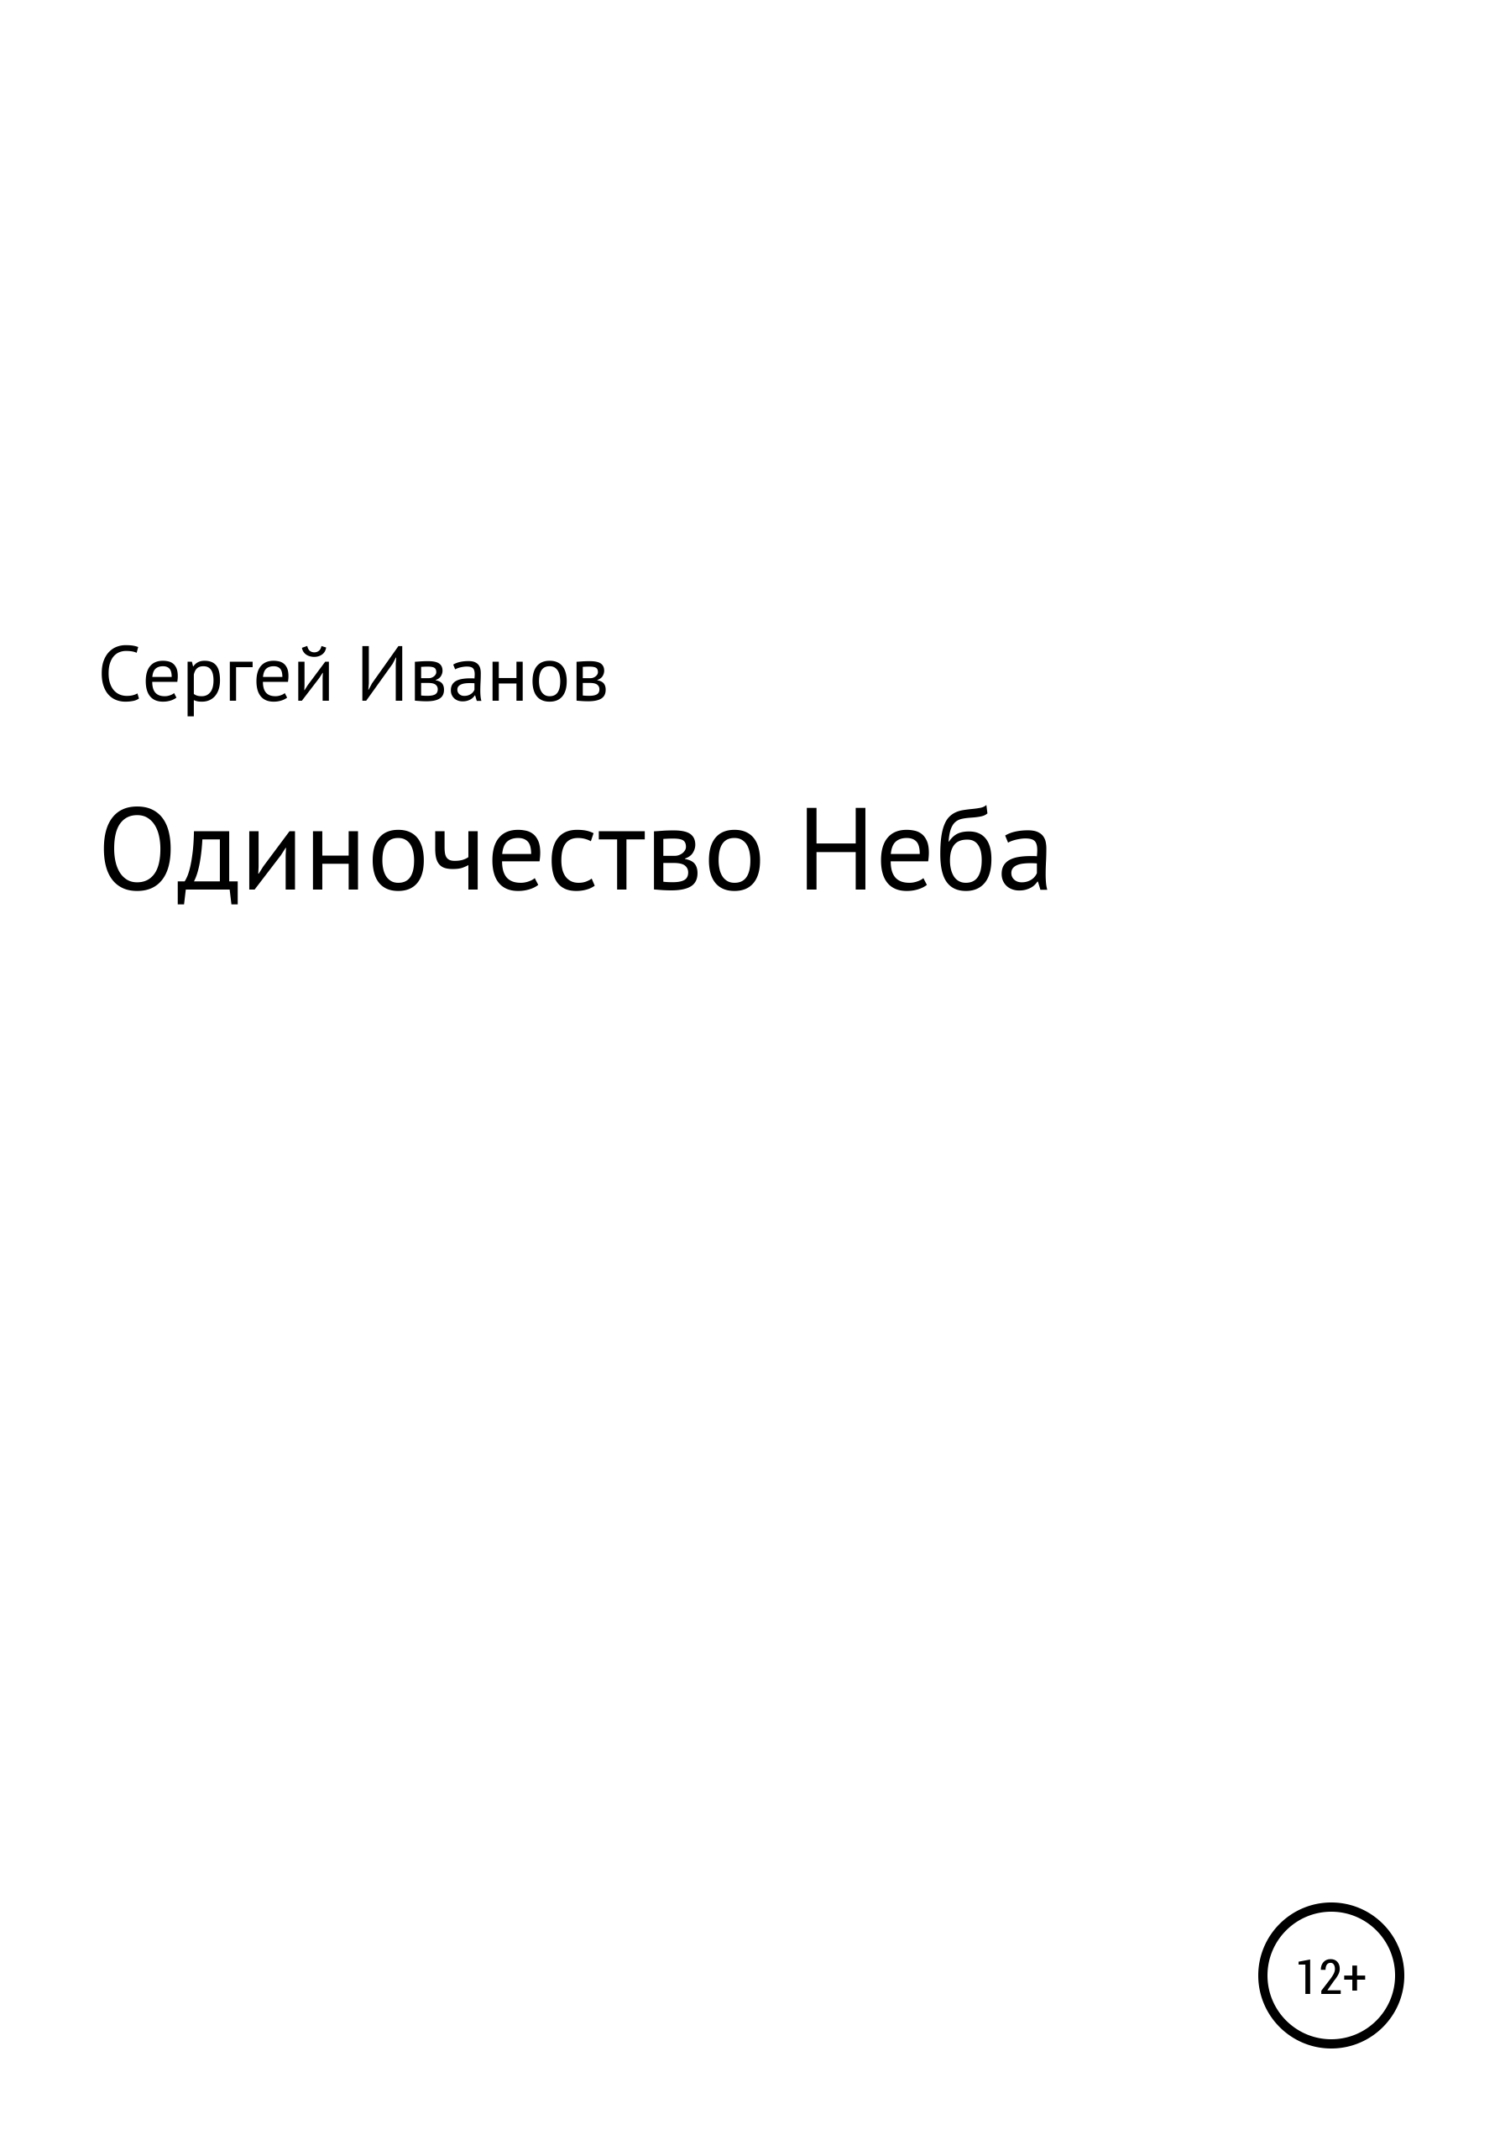 Одиночество Неба - Сергей Федорович Иванов